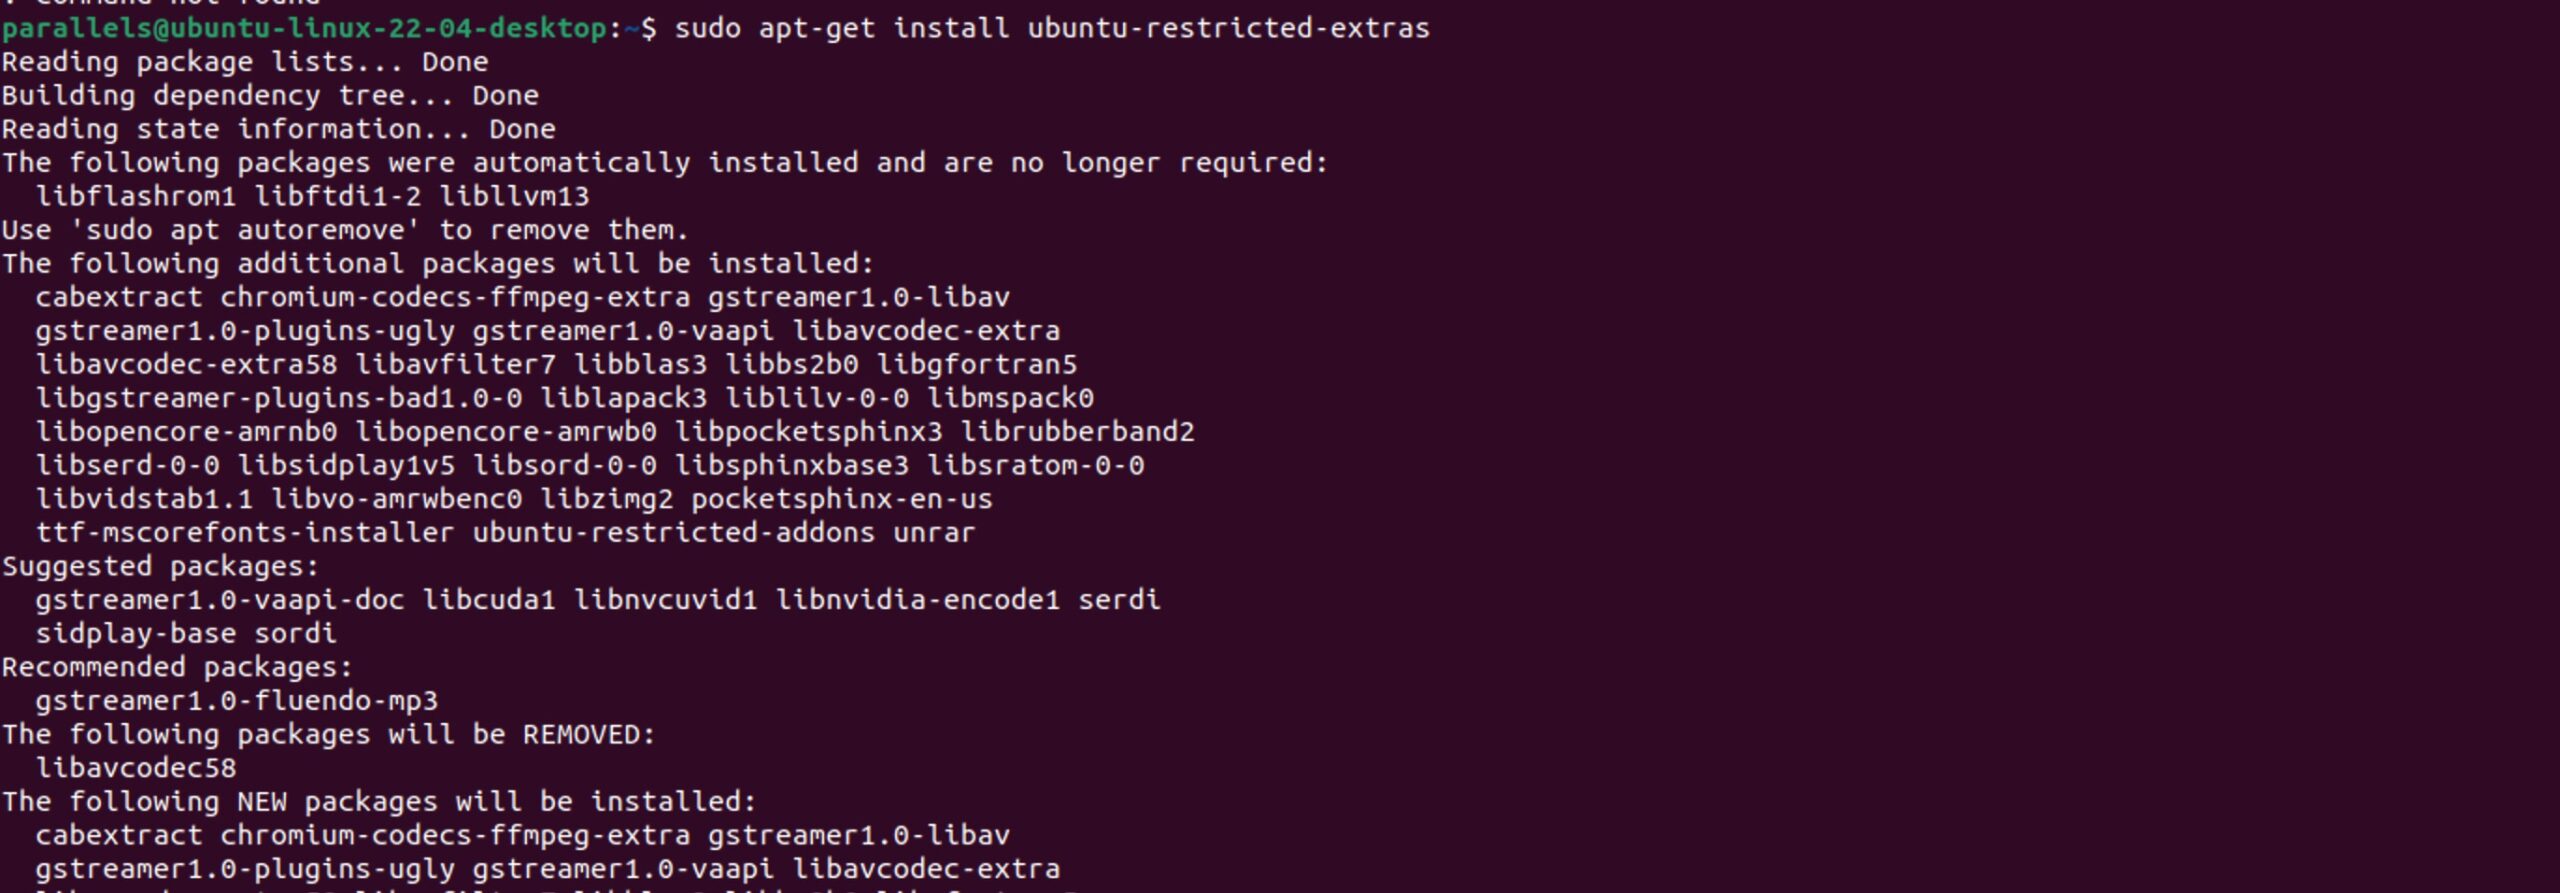 Instalamos todo aquello que no viene por defecto en Ubuntu (posibilidad de reproducir mp3, avi, flash videos, etc.)